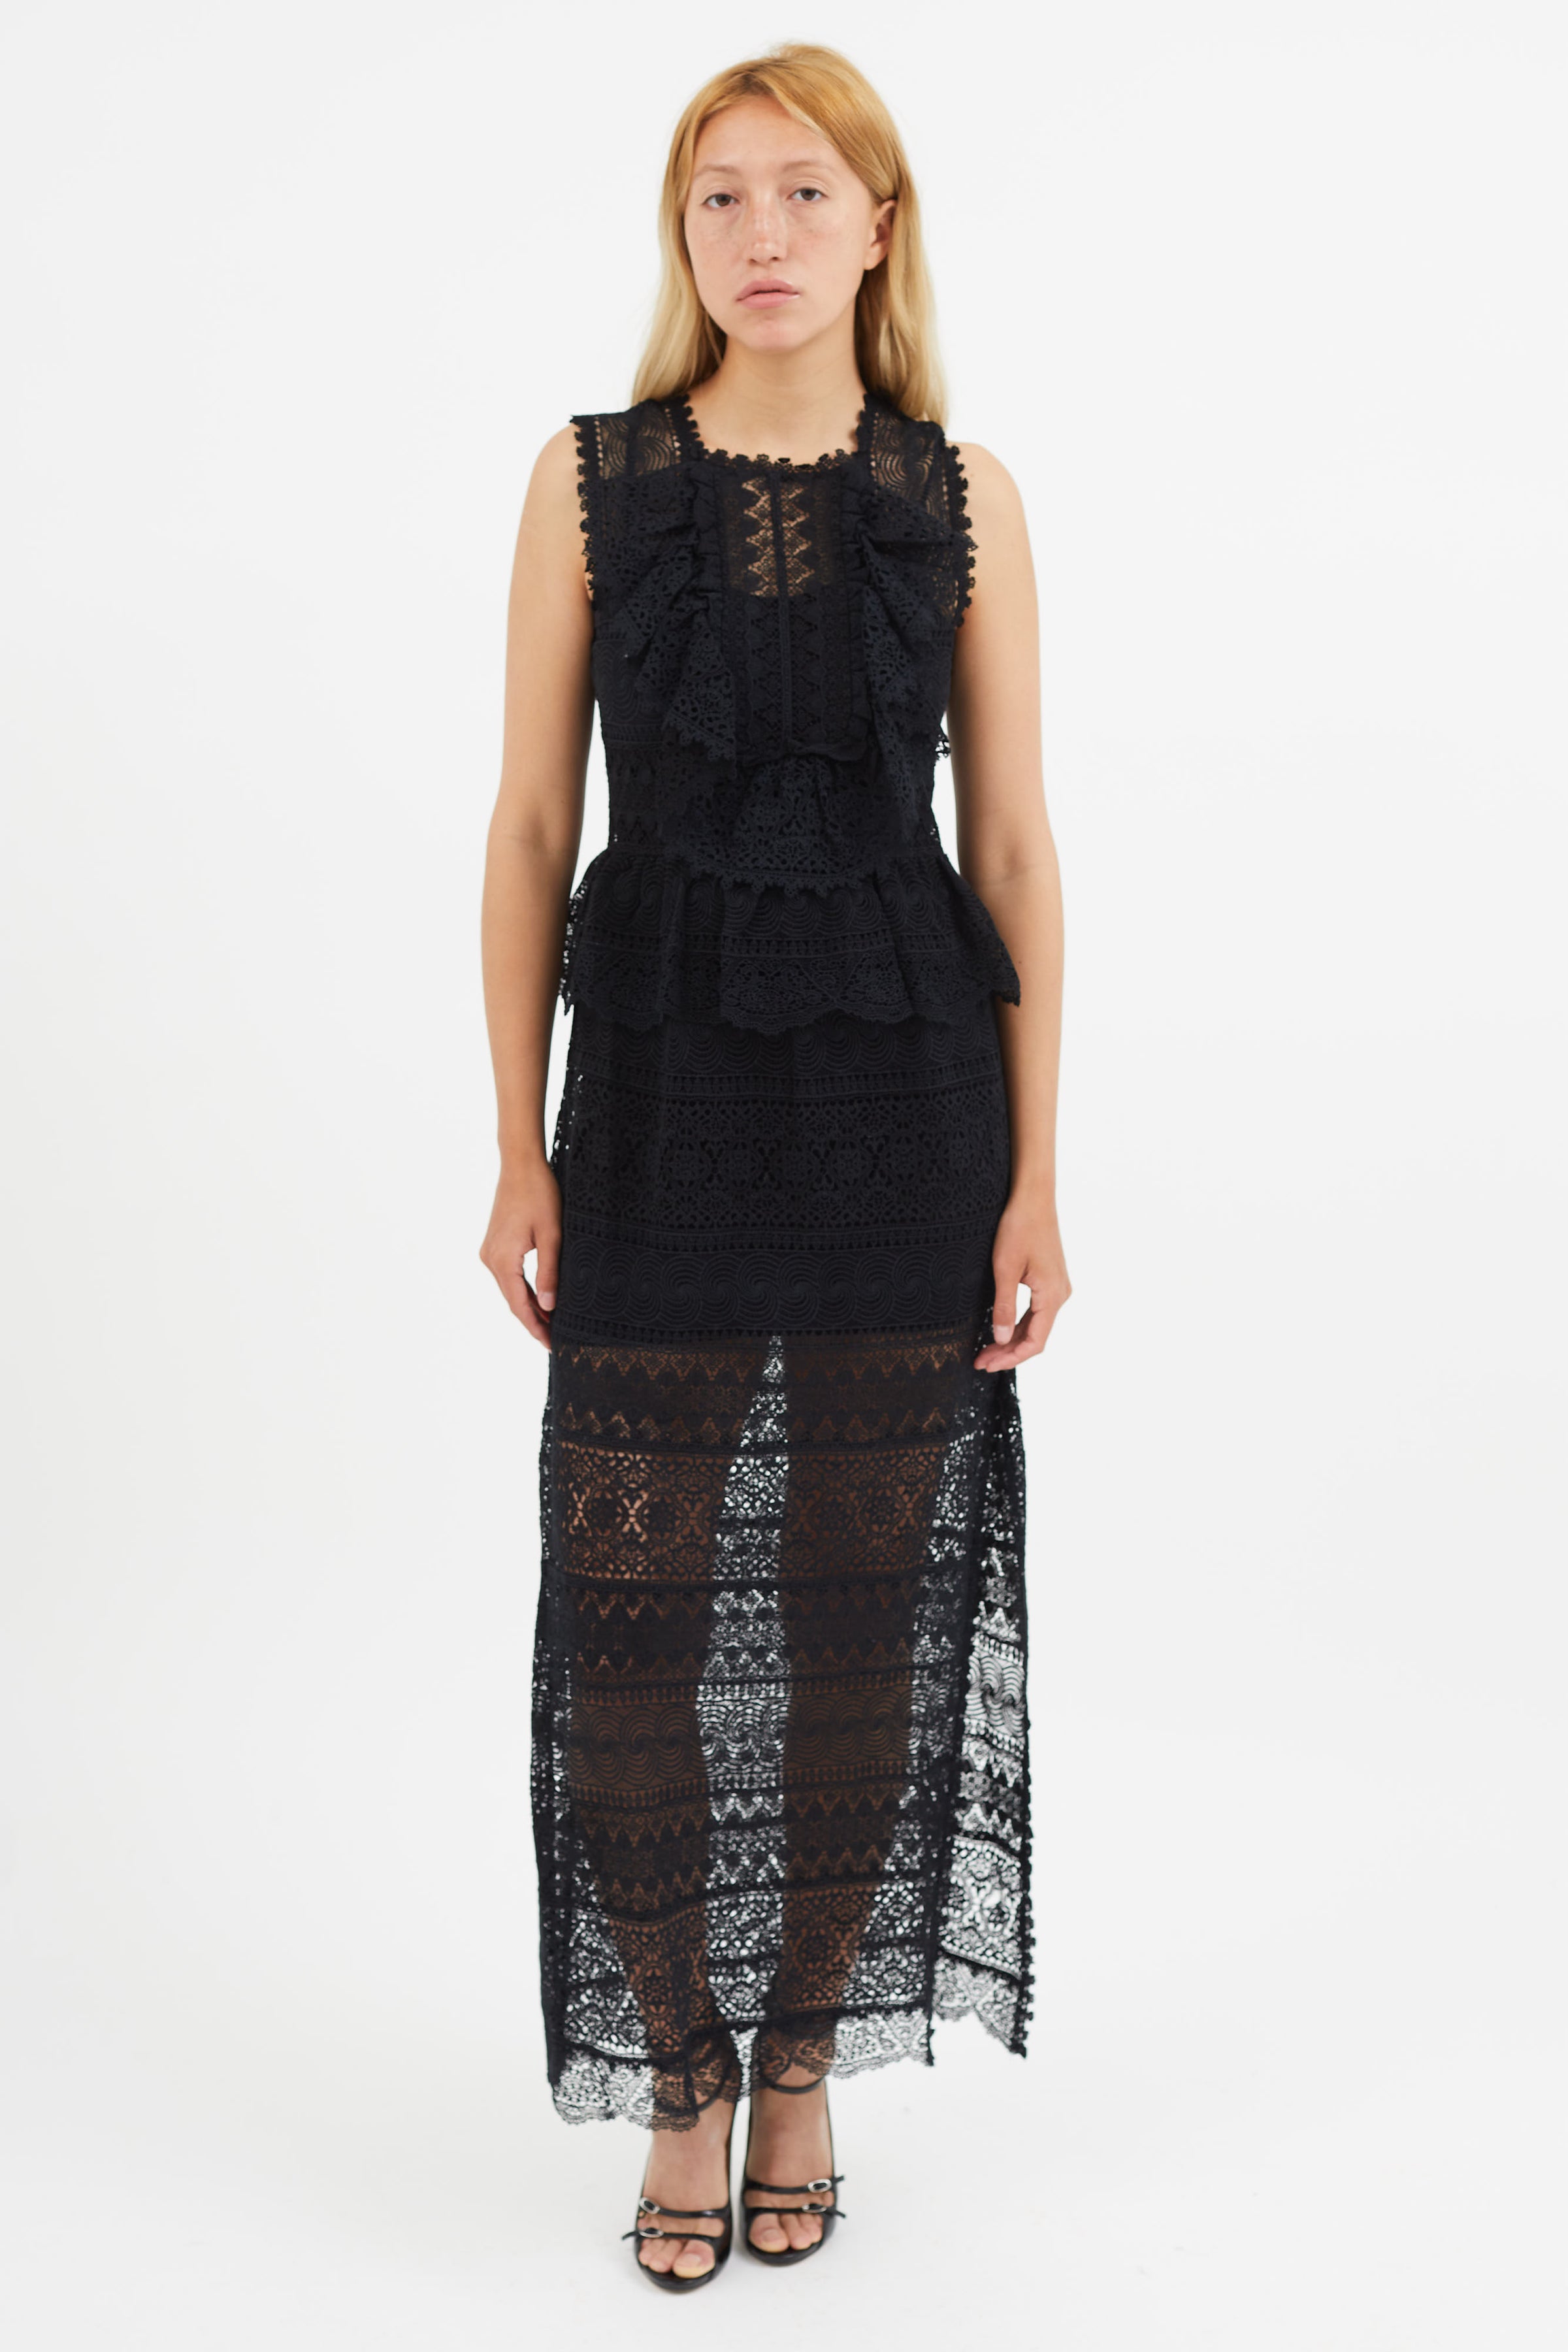 Ulla Johnson // Black Eyelet Lace Sheer Dress – VSP Consignment